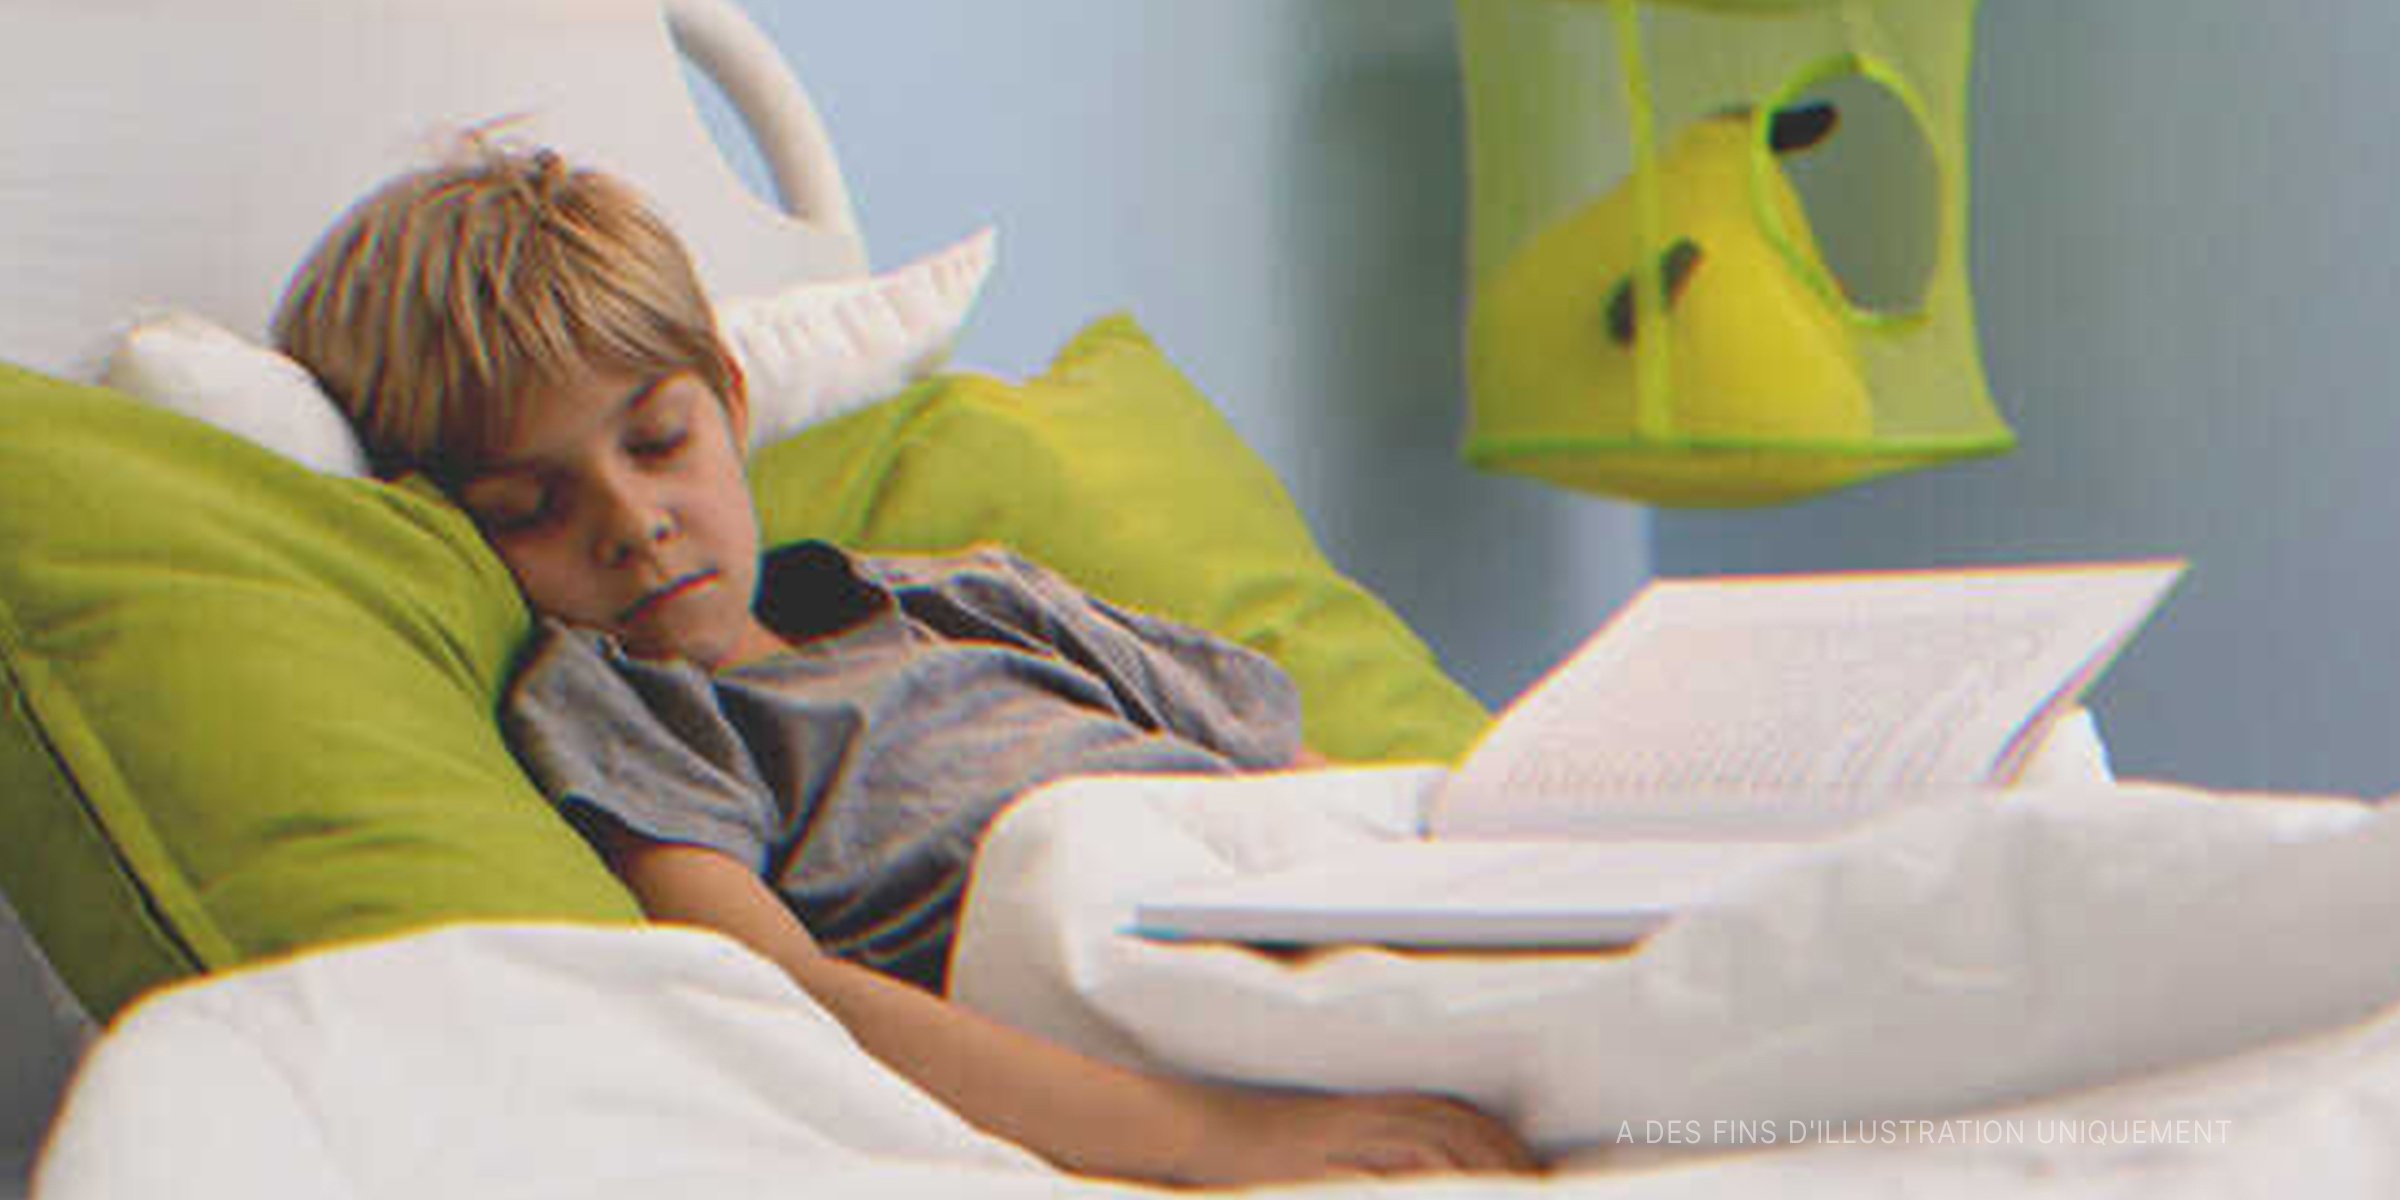 Un petit garçon couché sur un lit d'hôpital | Source : Shutterstock